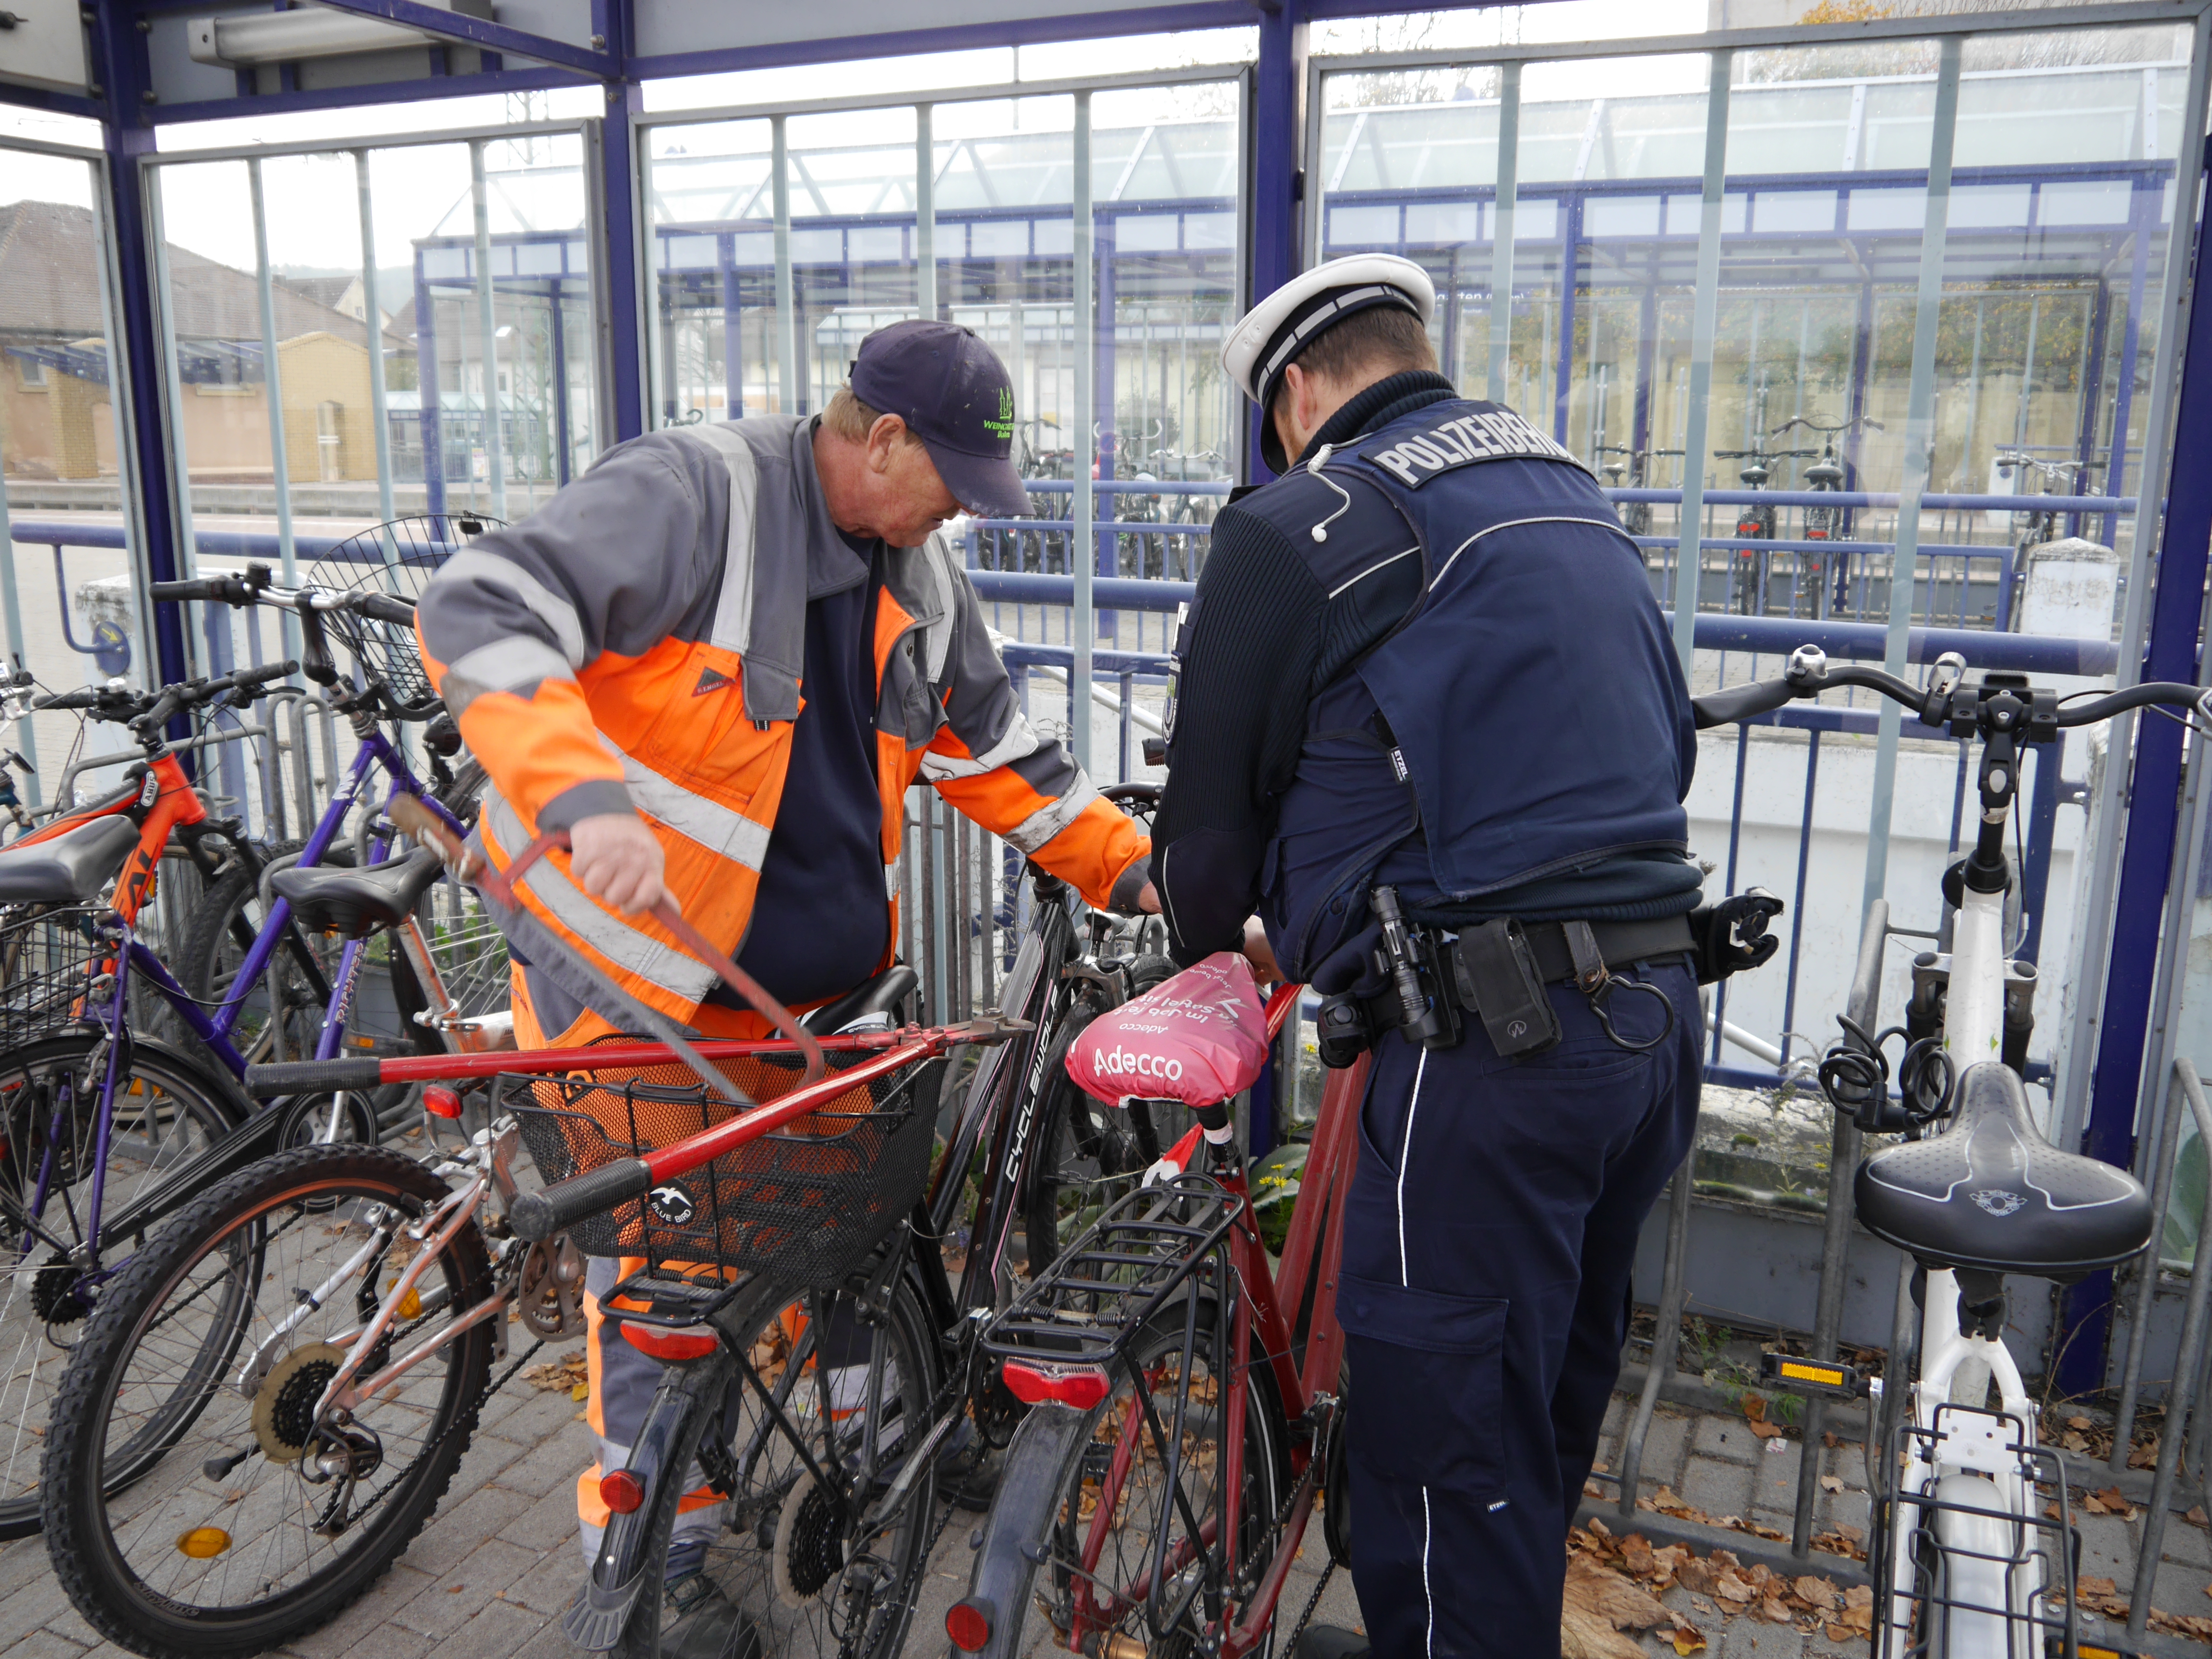  Schrotträder wurden bei einer gemeinsamen Aktion von Bauhof und Polizei in den Bauhof gebracht 